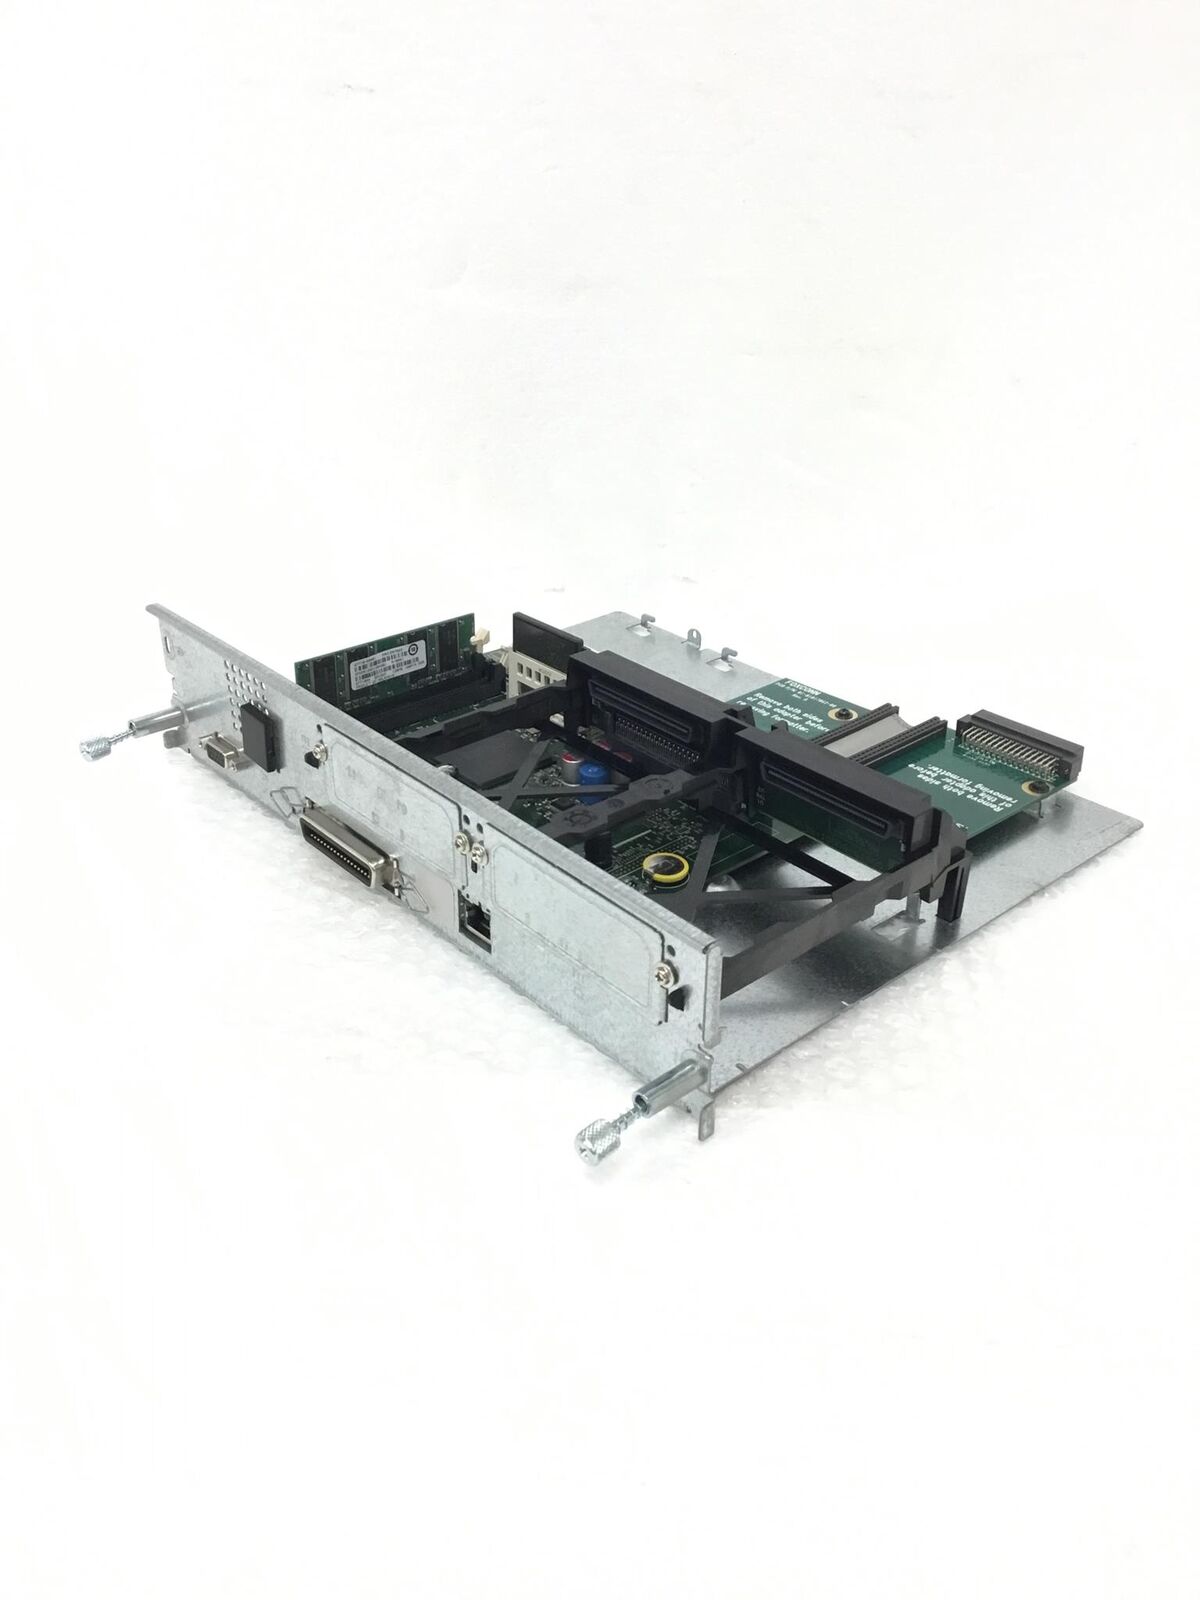 HP LaserJet 9050 Printer Formatter Board Q6477-60002 w/Q7725 Card 32MB/128MB RAM